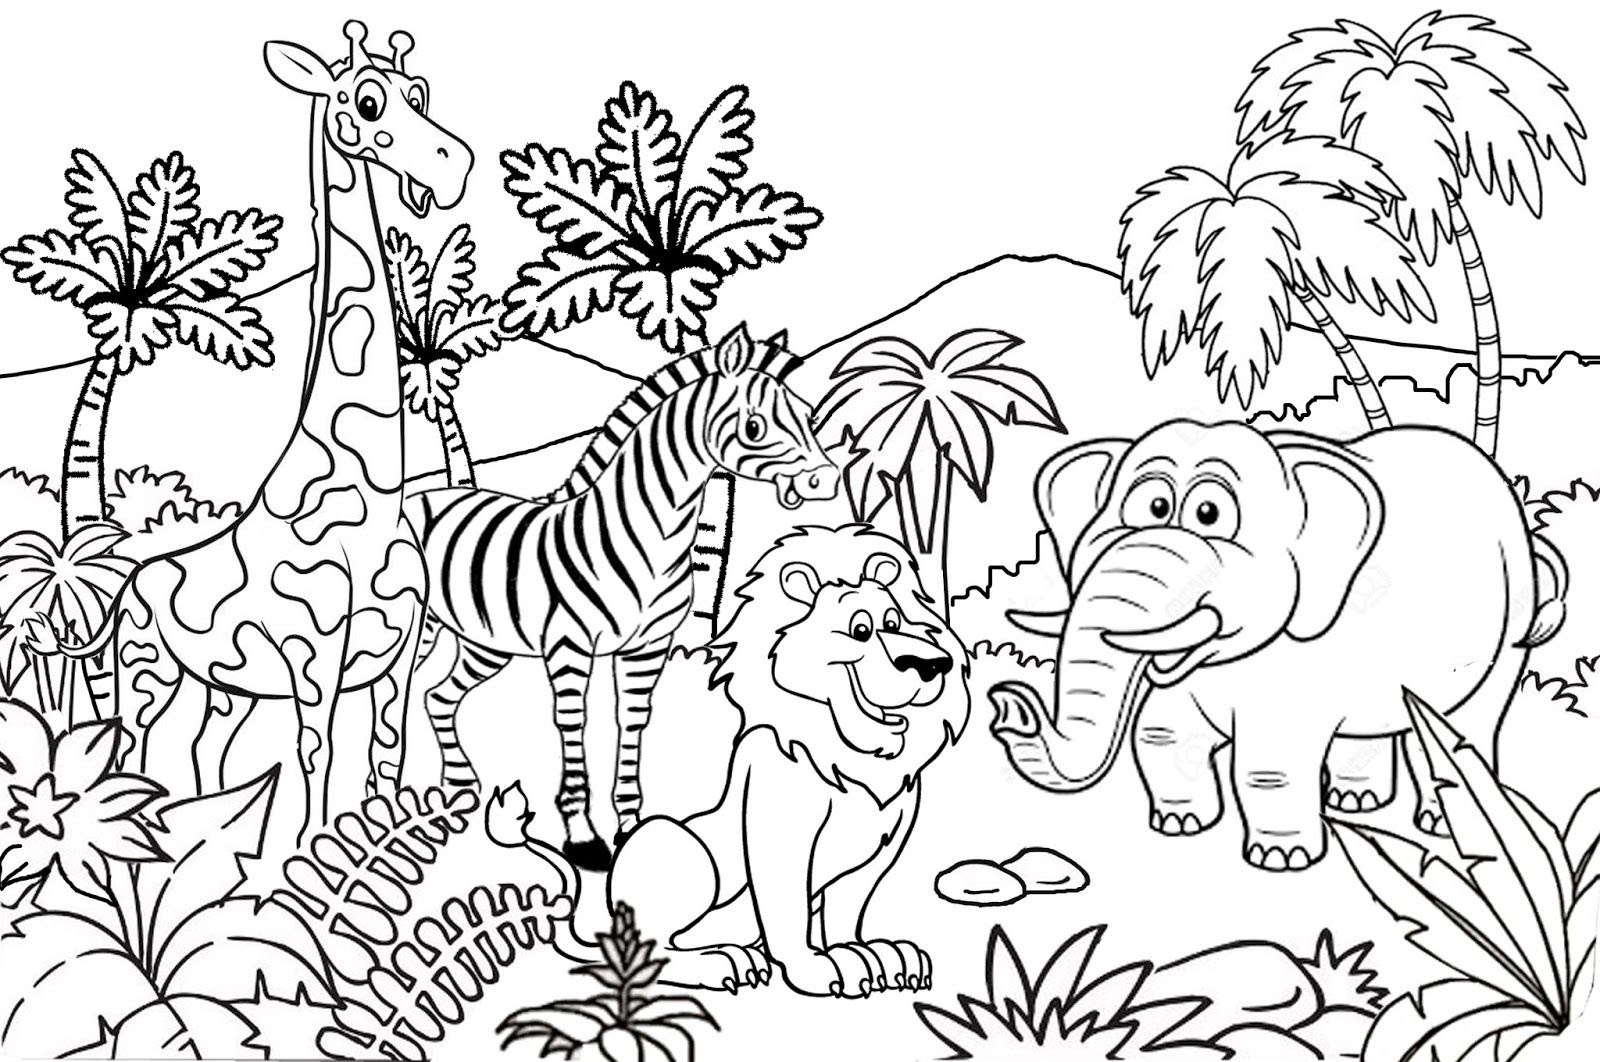  Mewarnai  Gambar  Kebun Binatang  Untuk Anak Tk